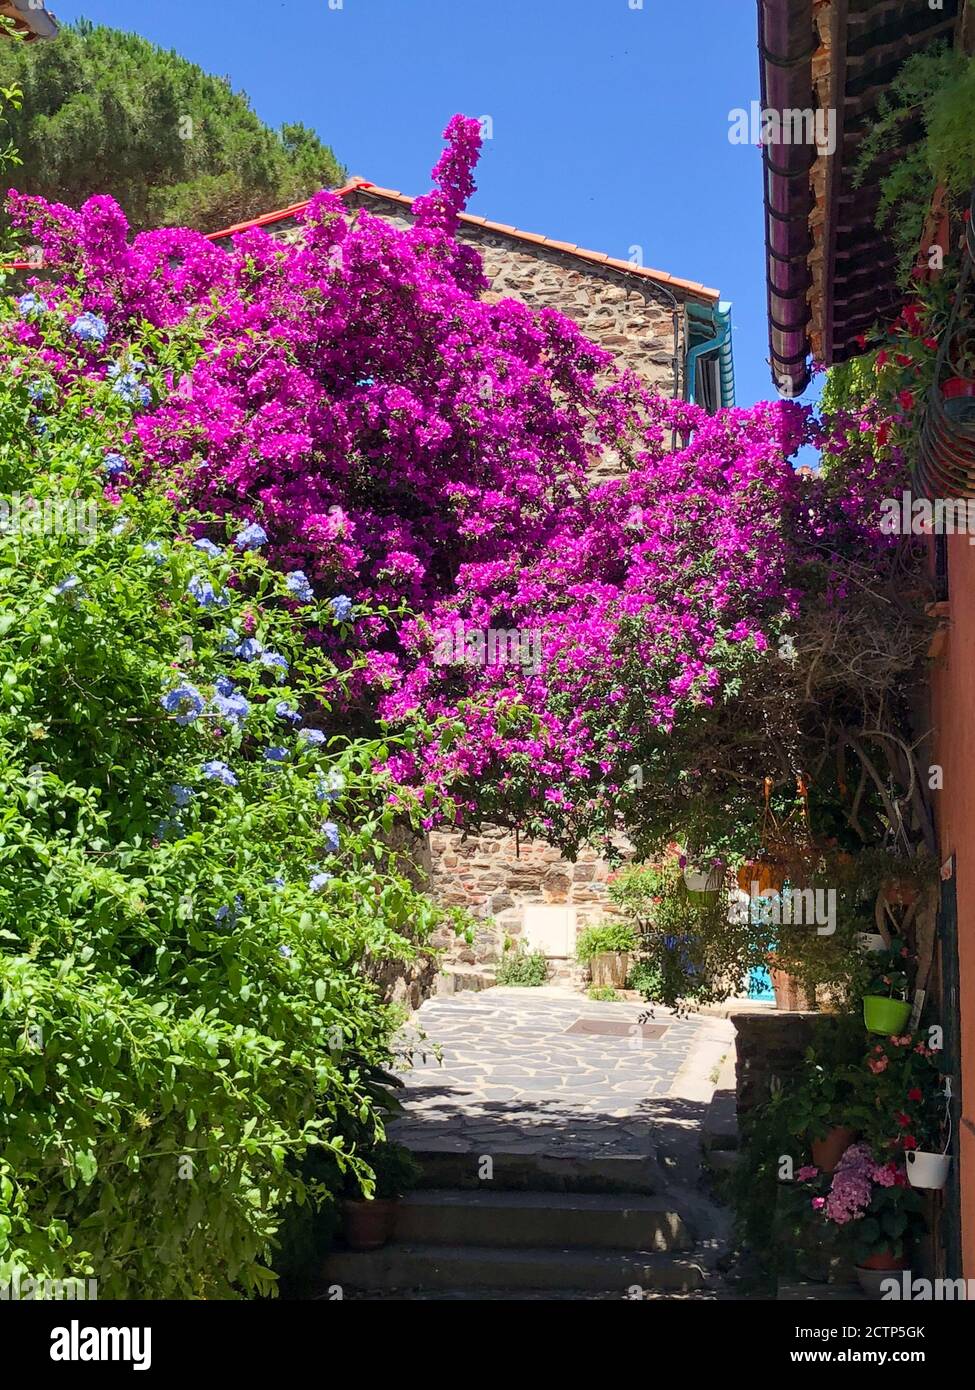 Un arco di fiori rosa, viola e blu creano una copertura per un marciapiede nel centro storico di Collioure, in Francia, sul Mar Mediterraneo. Foto Stock